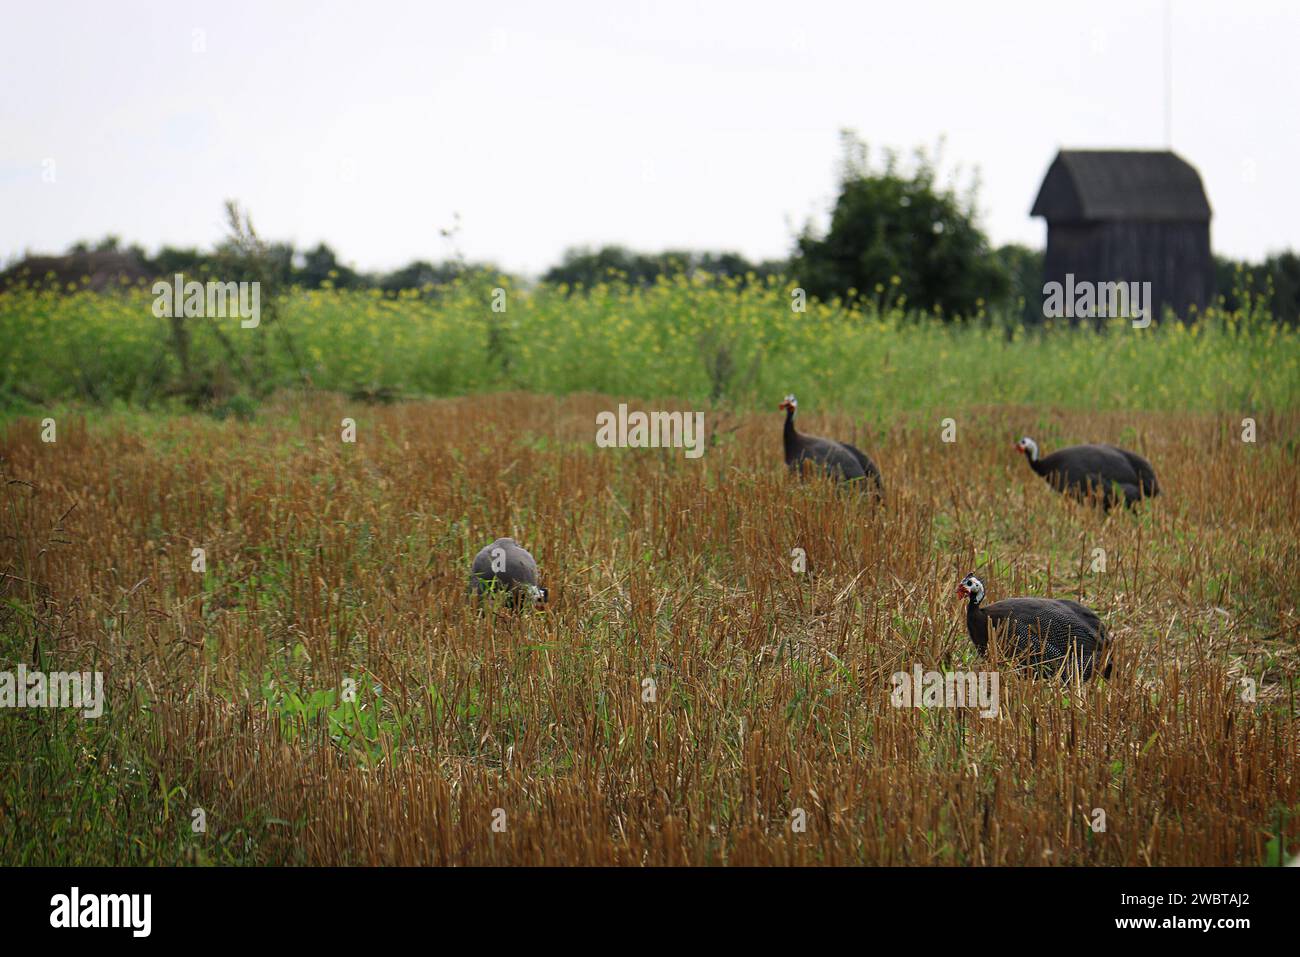 Un groupe d'oiseaux dindes dans une grange. Banque D'Images